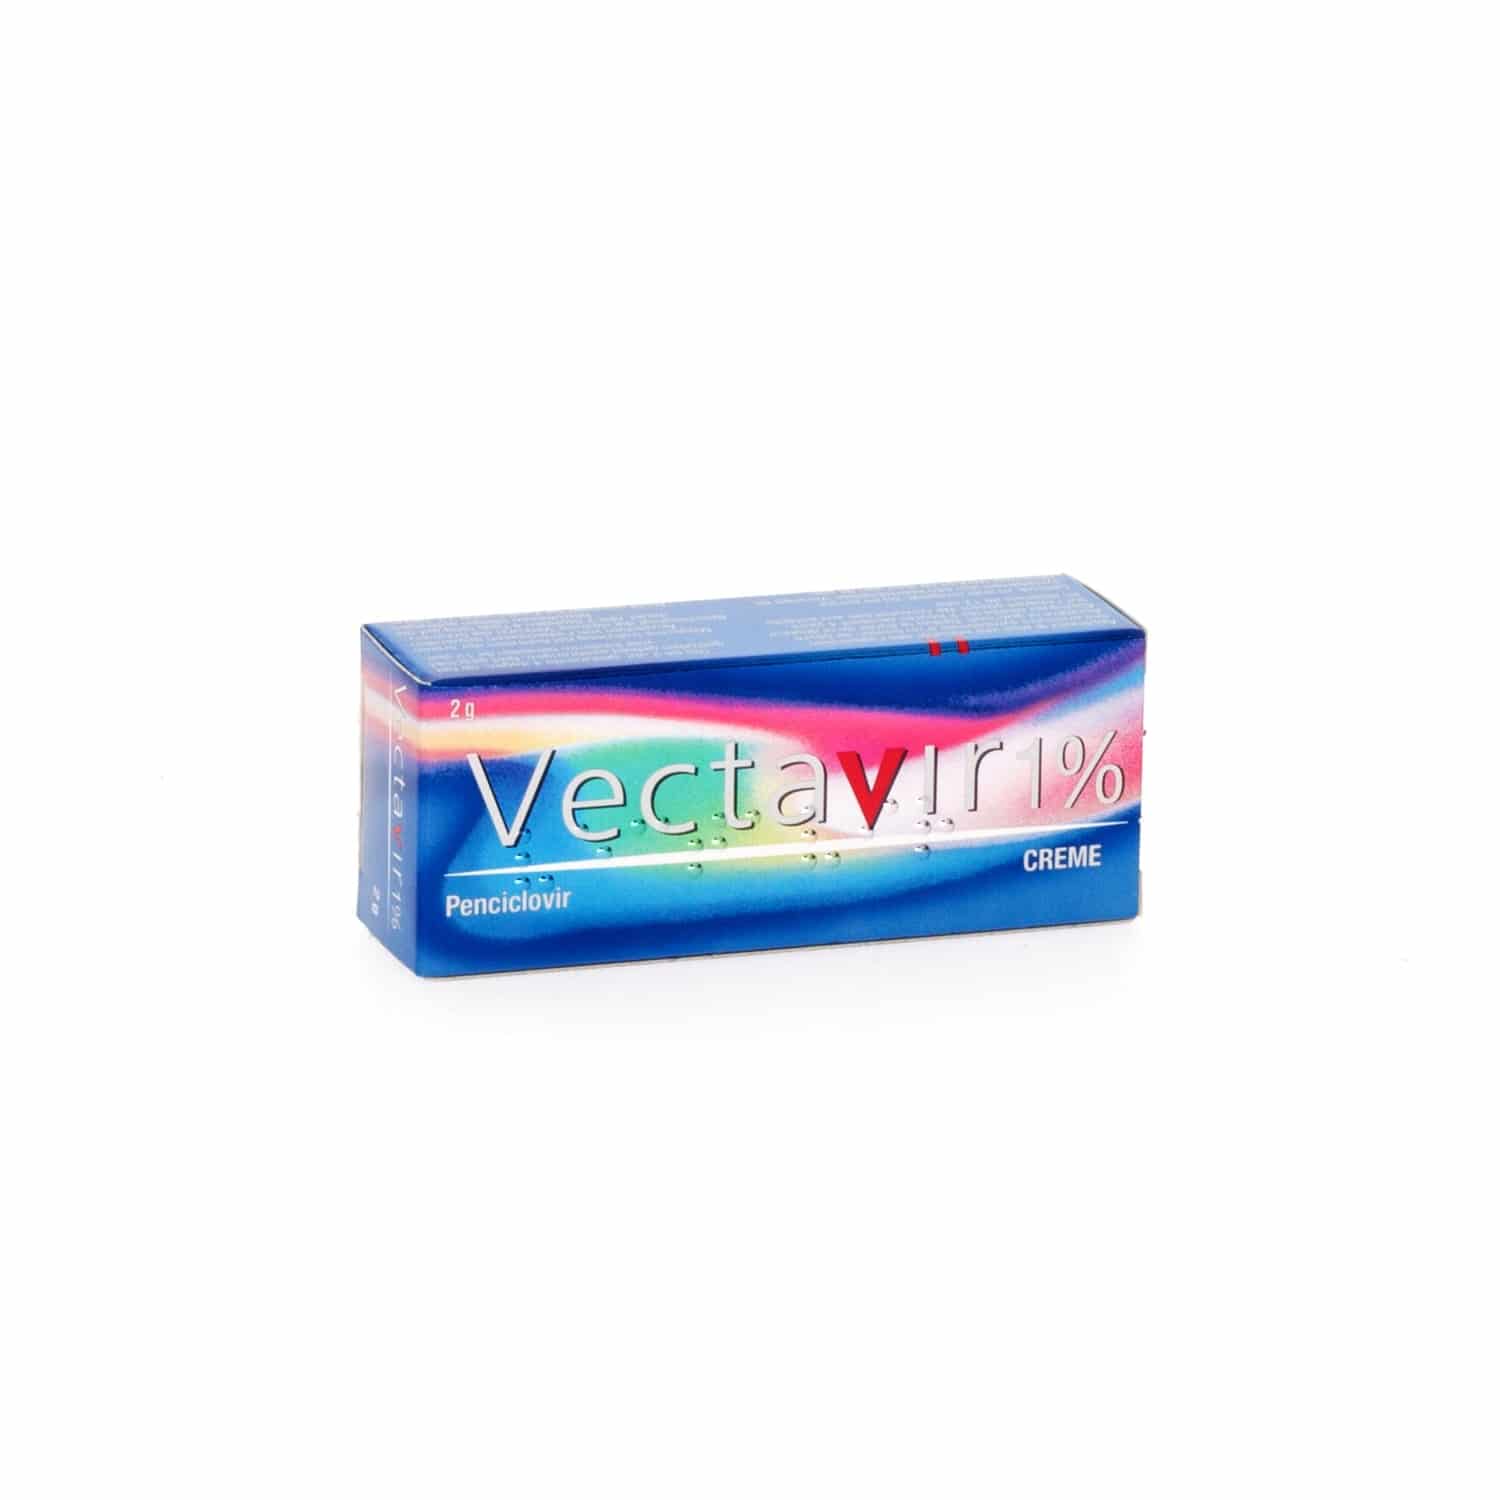 Vectavir Crème